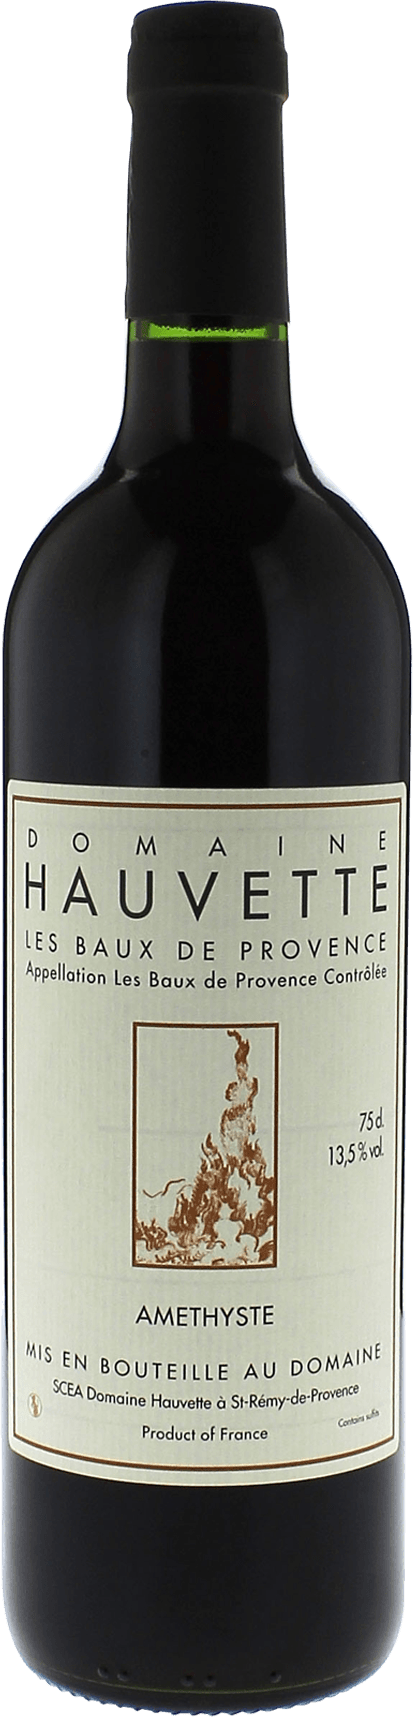 Domaine hauvette amethyste 2015  AOC Baux de Provence, Slection provence rouge